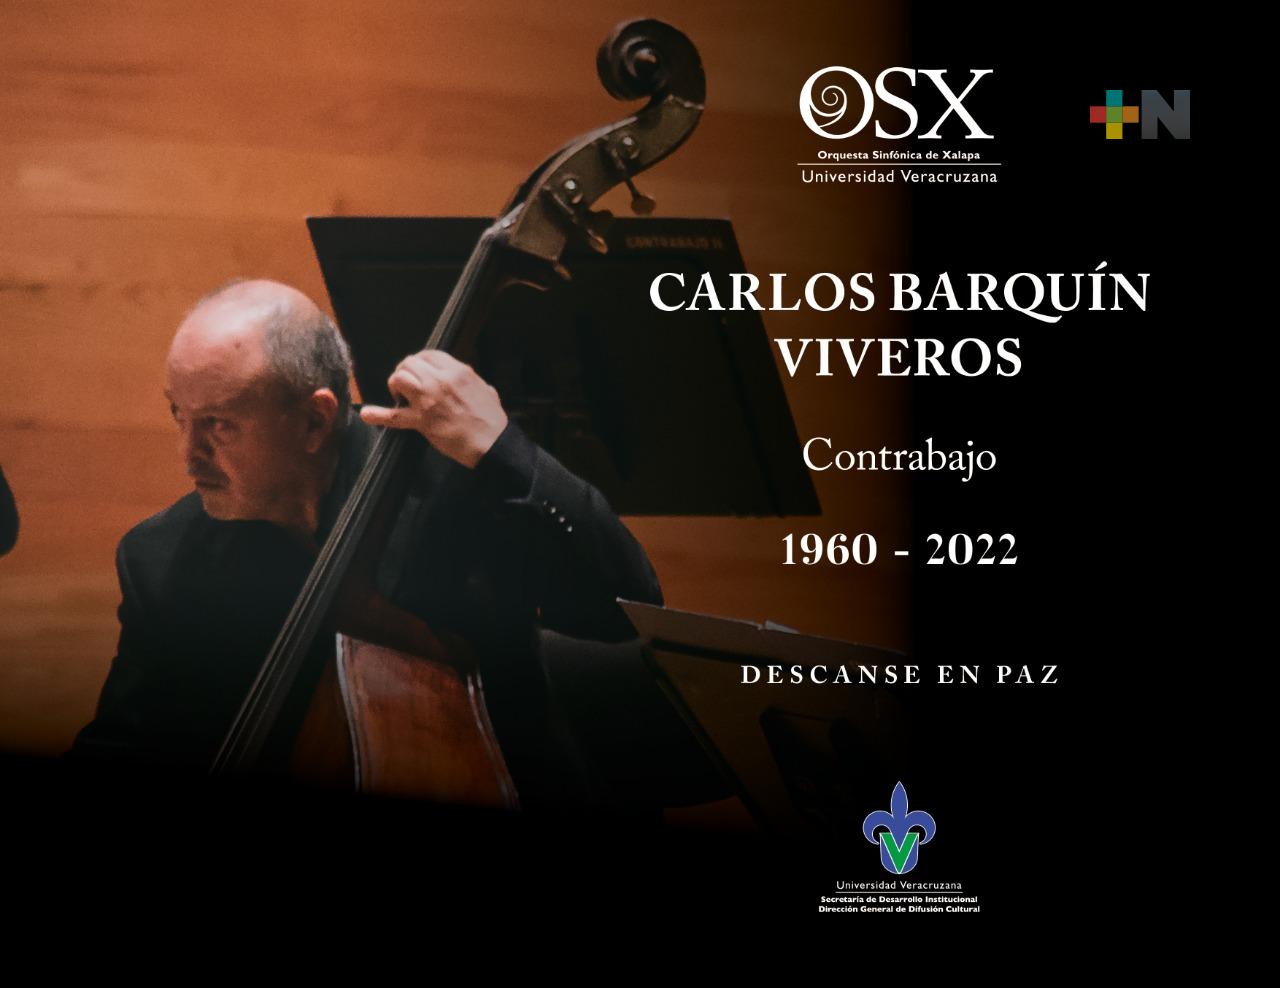 OSX lamenta el deceso de su contrabajista, Carlos Barquín